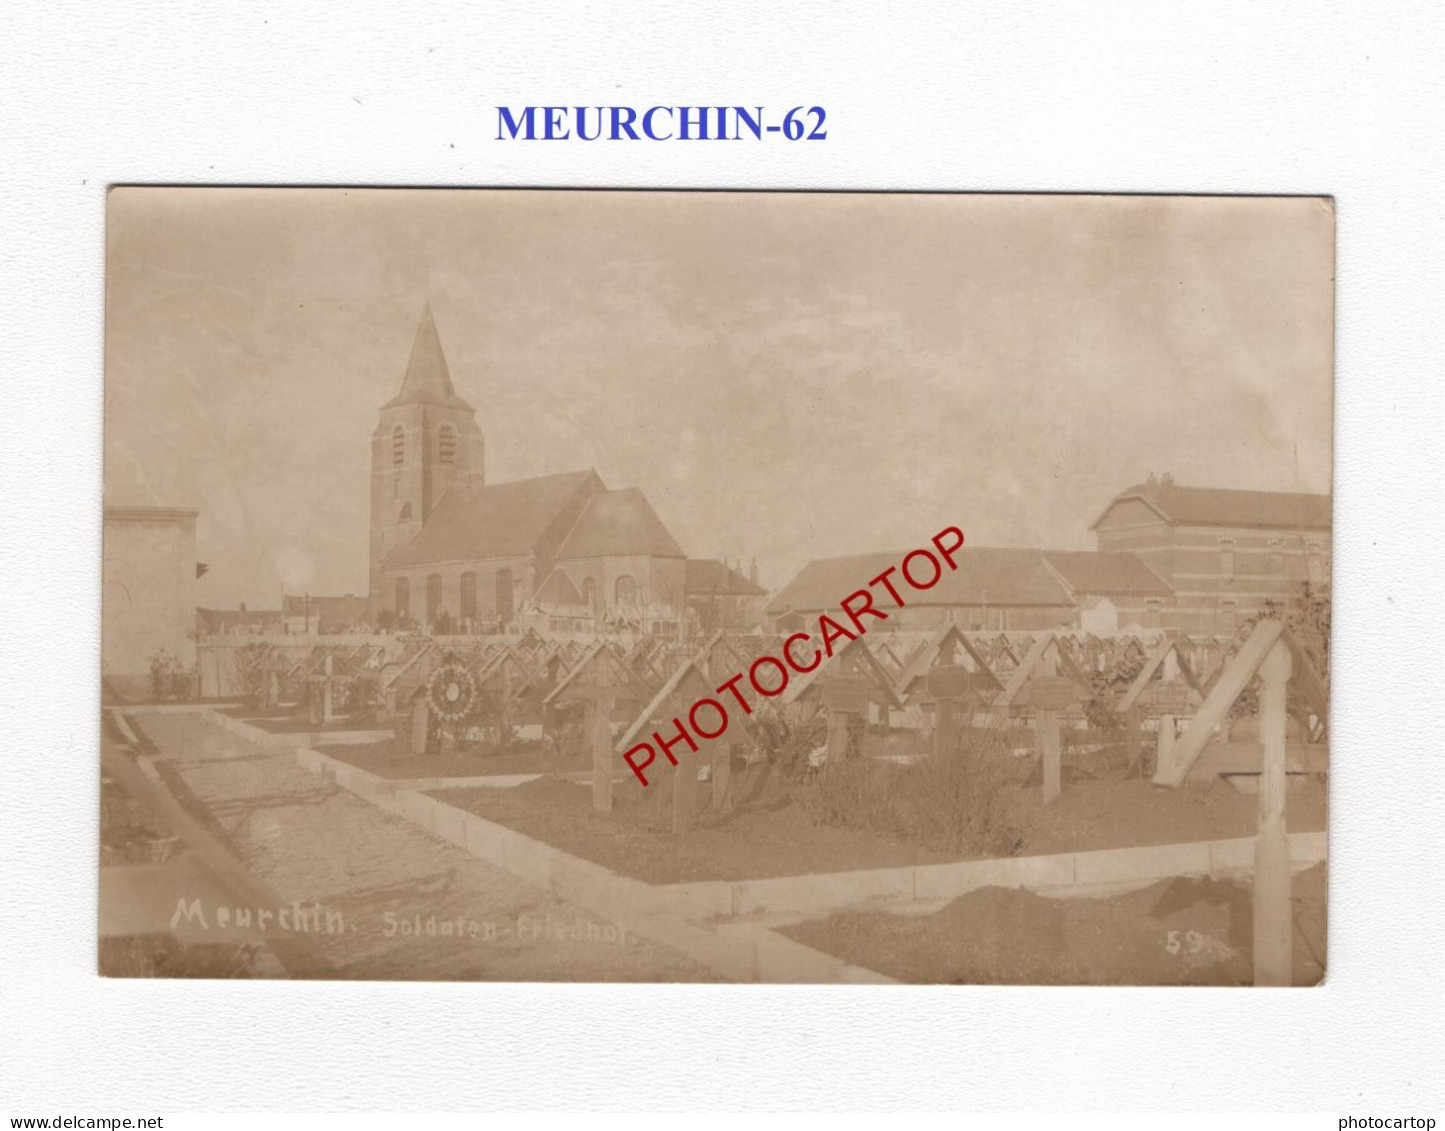 MEURCHIN-62-Cimetiere-Tombes-CARTE PHOTO Allemande-GUERRE 14-18-1 WK-MILITARIA- - Cimetières Militaires